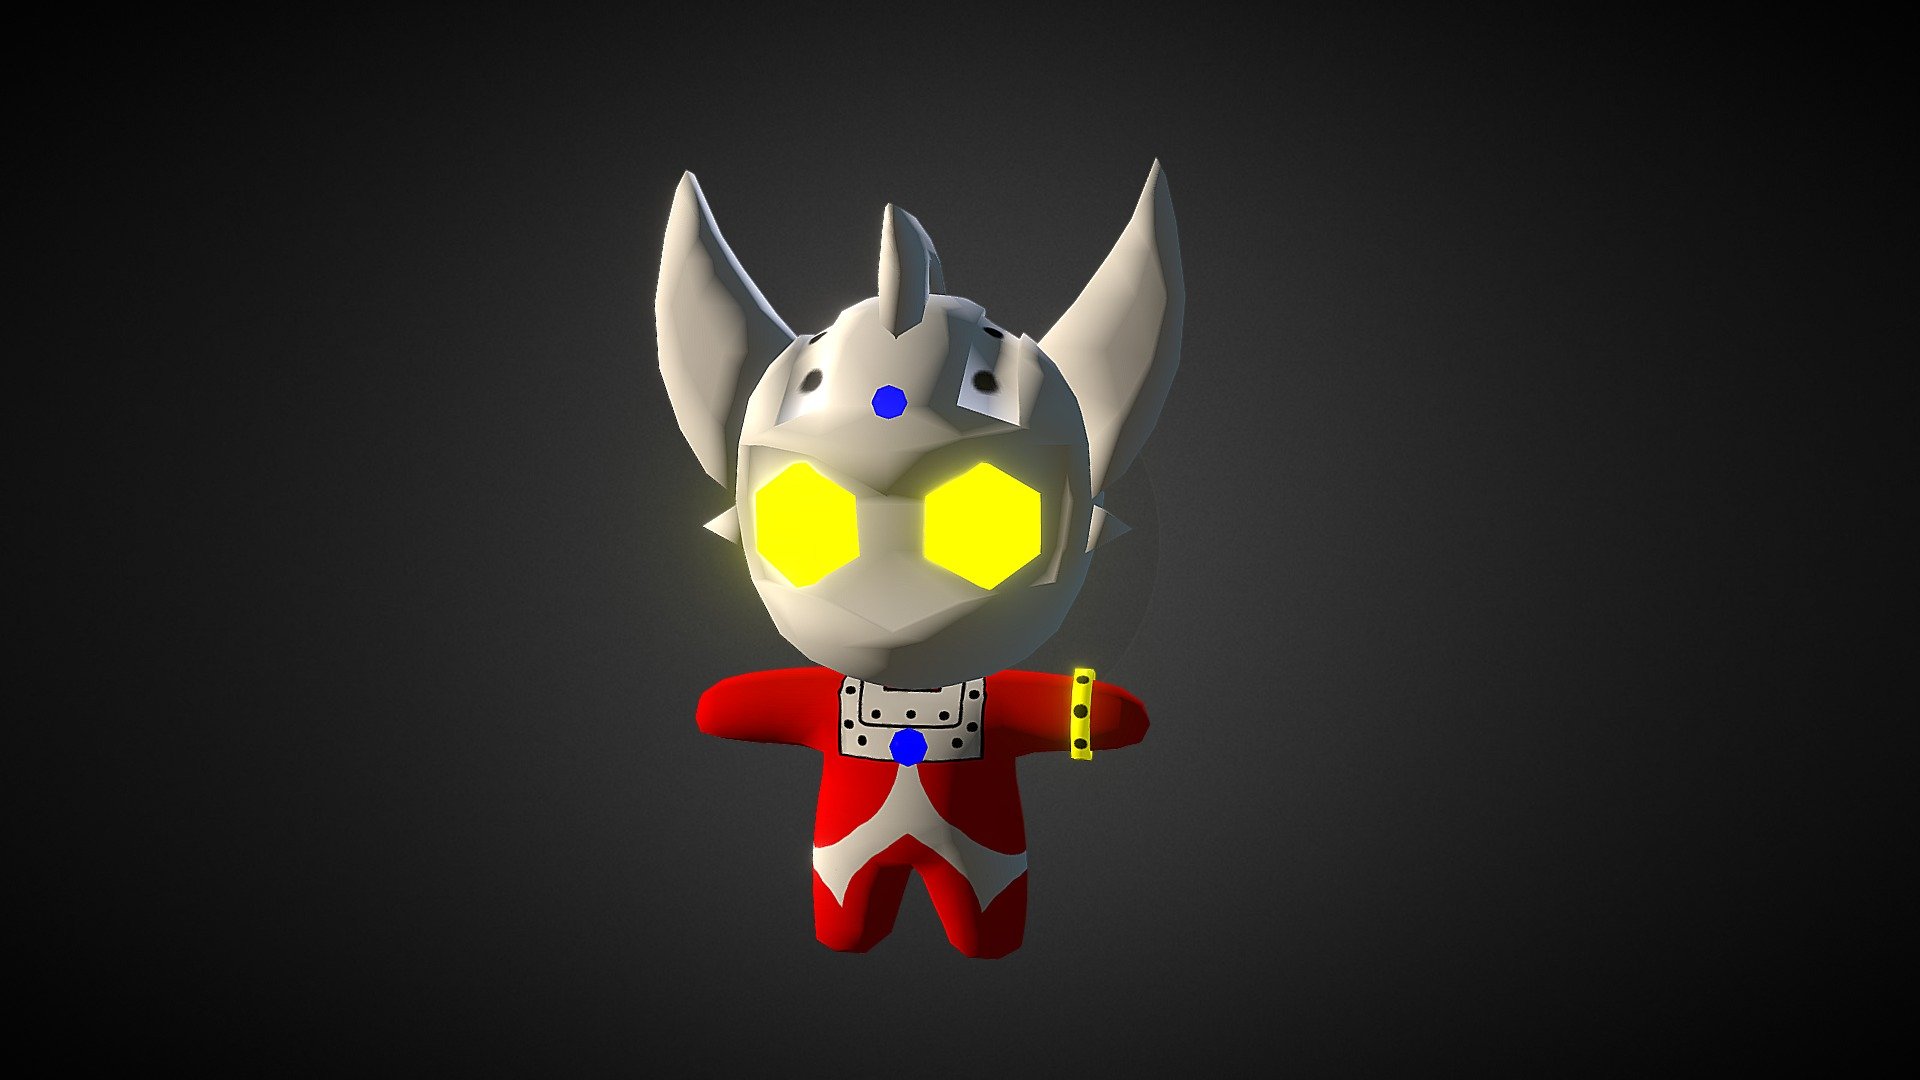 Ultraman Rumble - Ultraman Taro - 3D model by Animatic3D 3d model